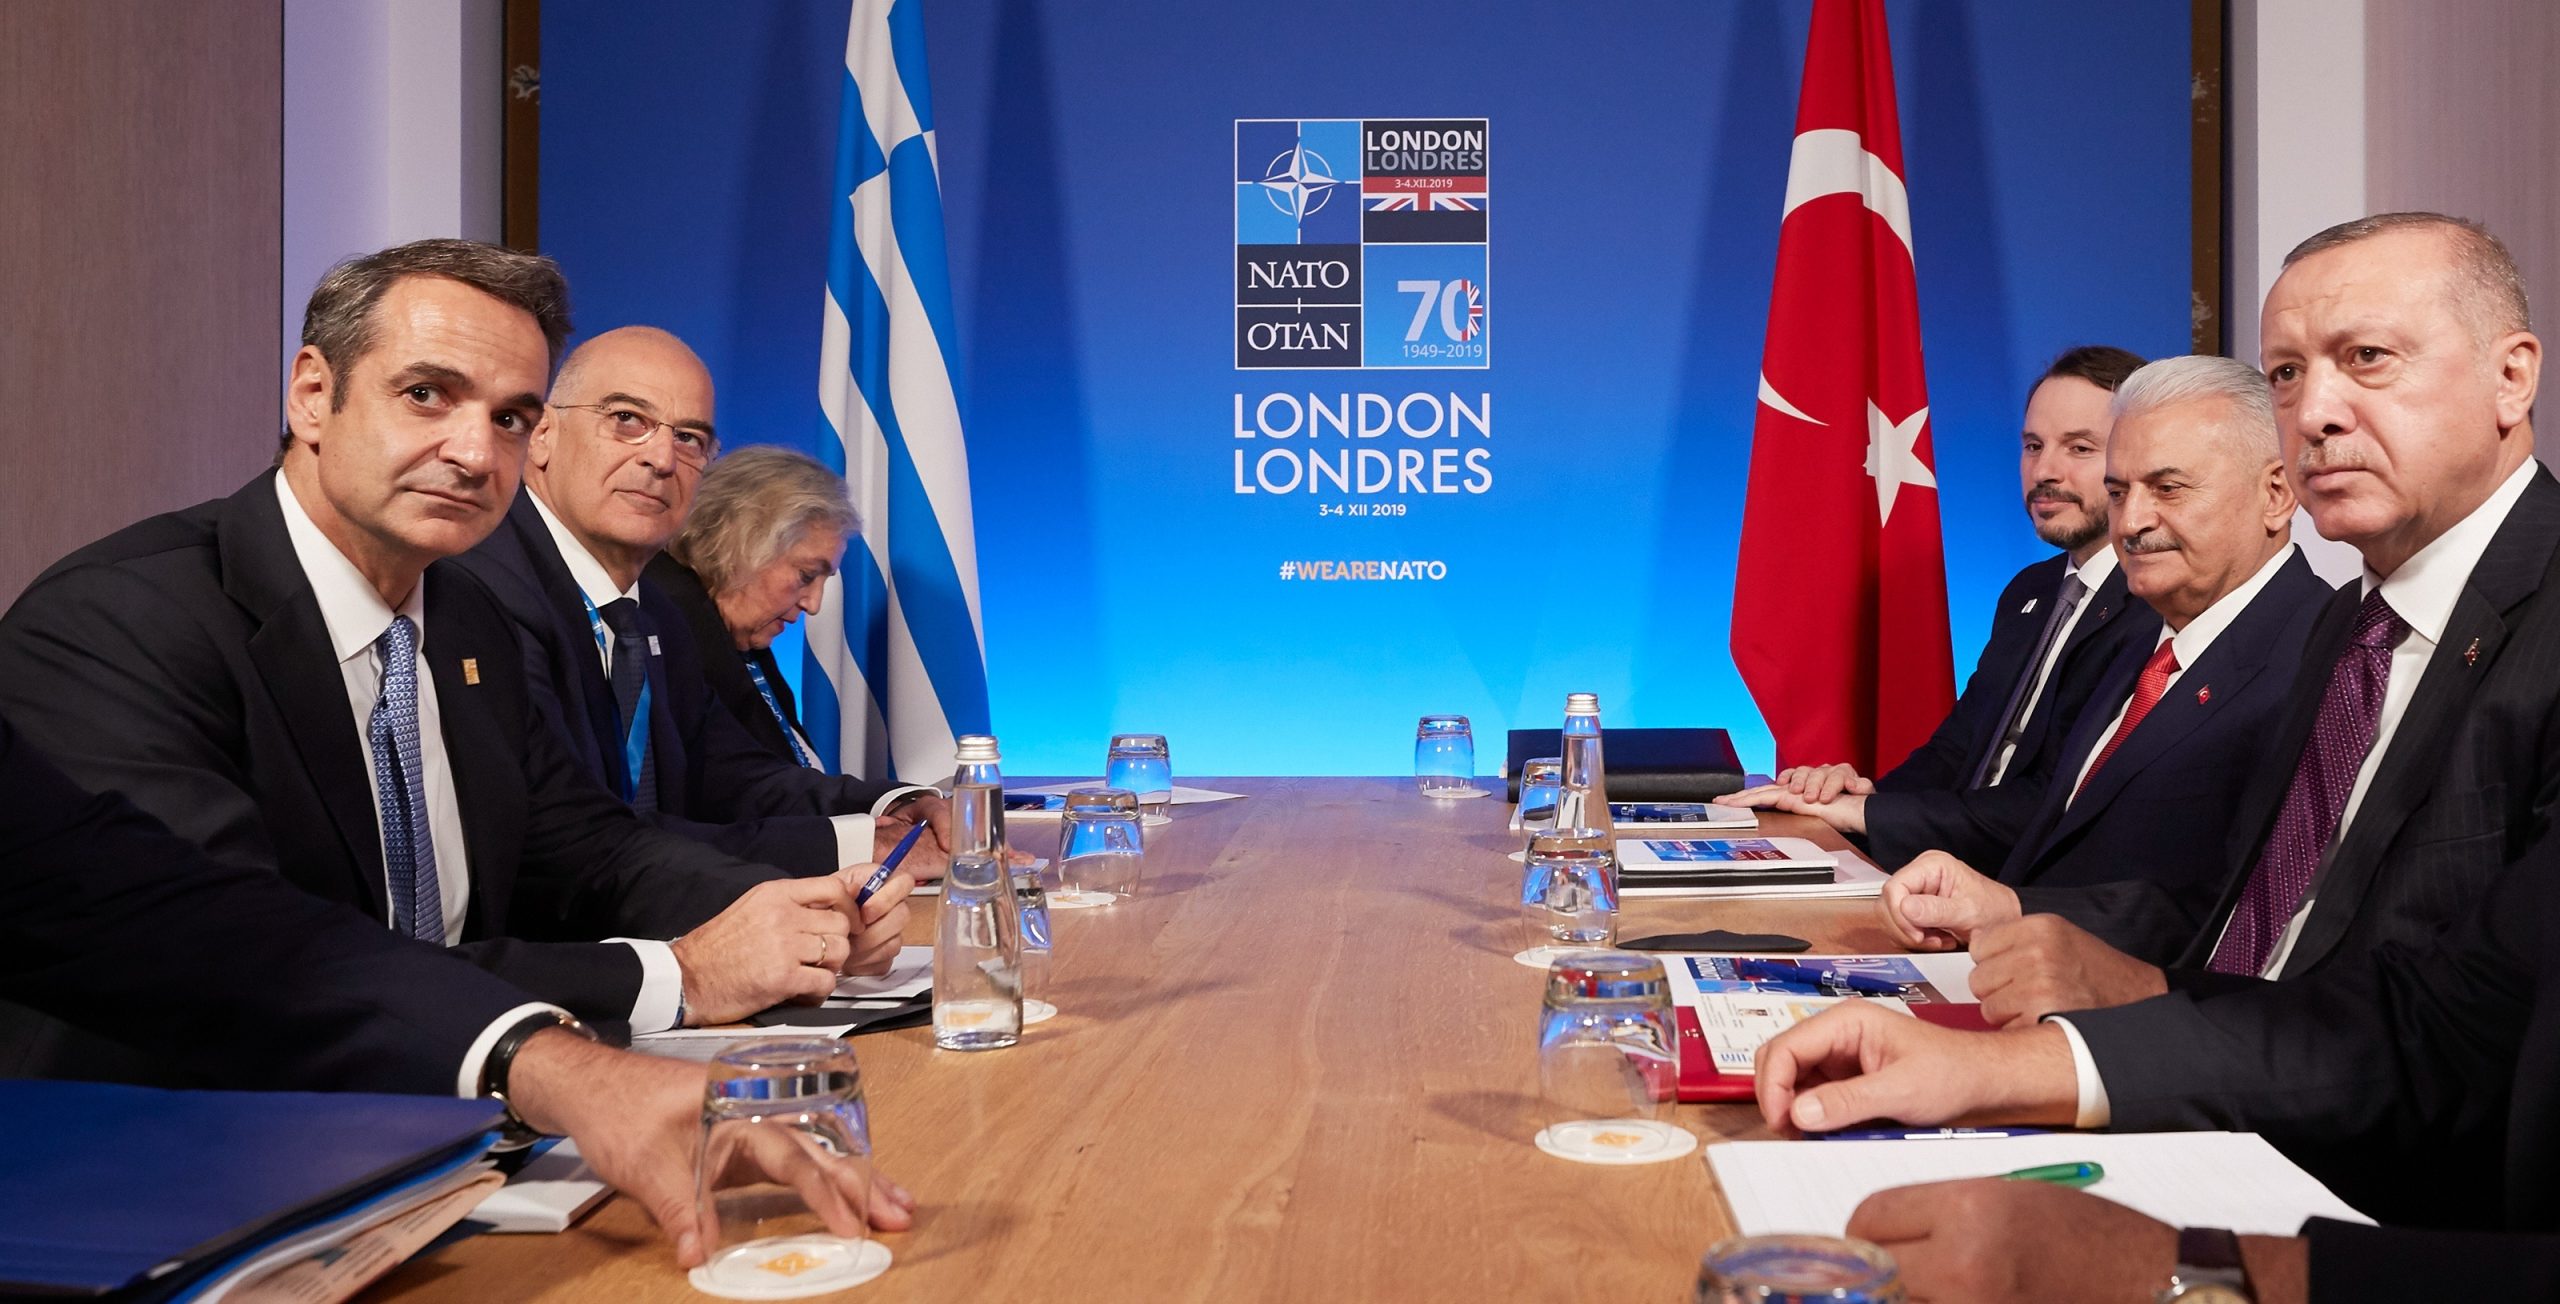 Πώς η Ελλάδα  έπεσε στην παγίδα της Χάγης: Η κυβέρνηση άνοιξε το θέμα και η Τουρκία απάντησε με αποστρατικοποίηση!